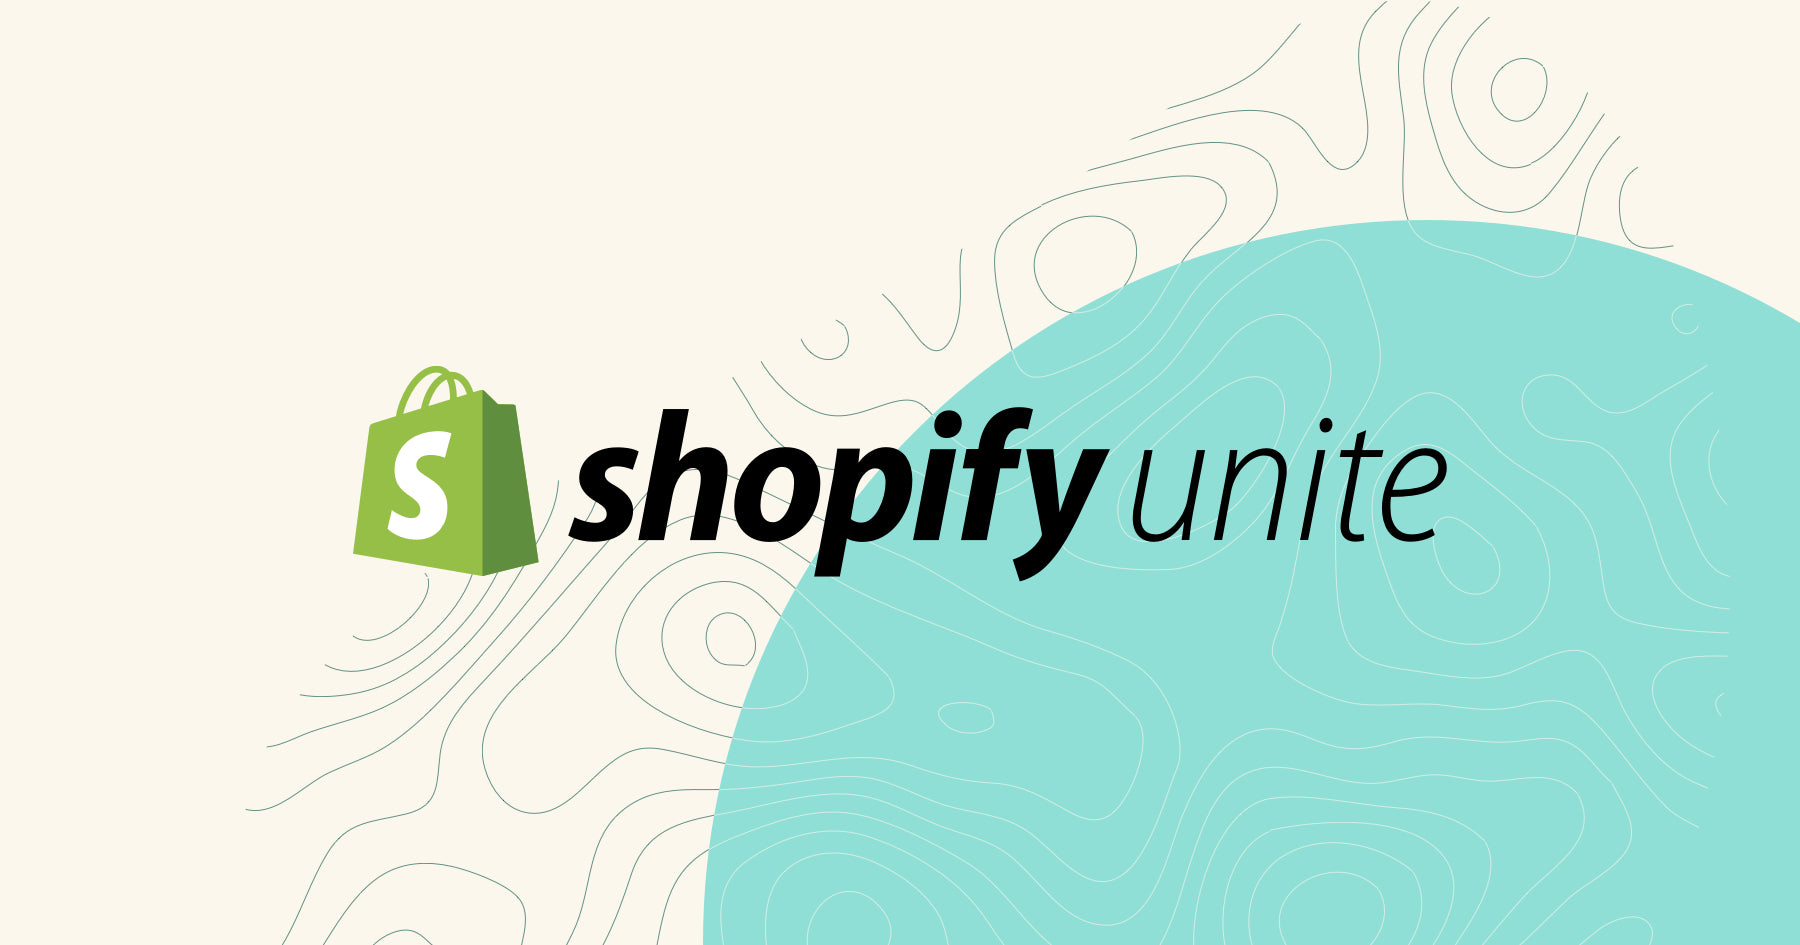 Design Shopify Unite 2019